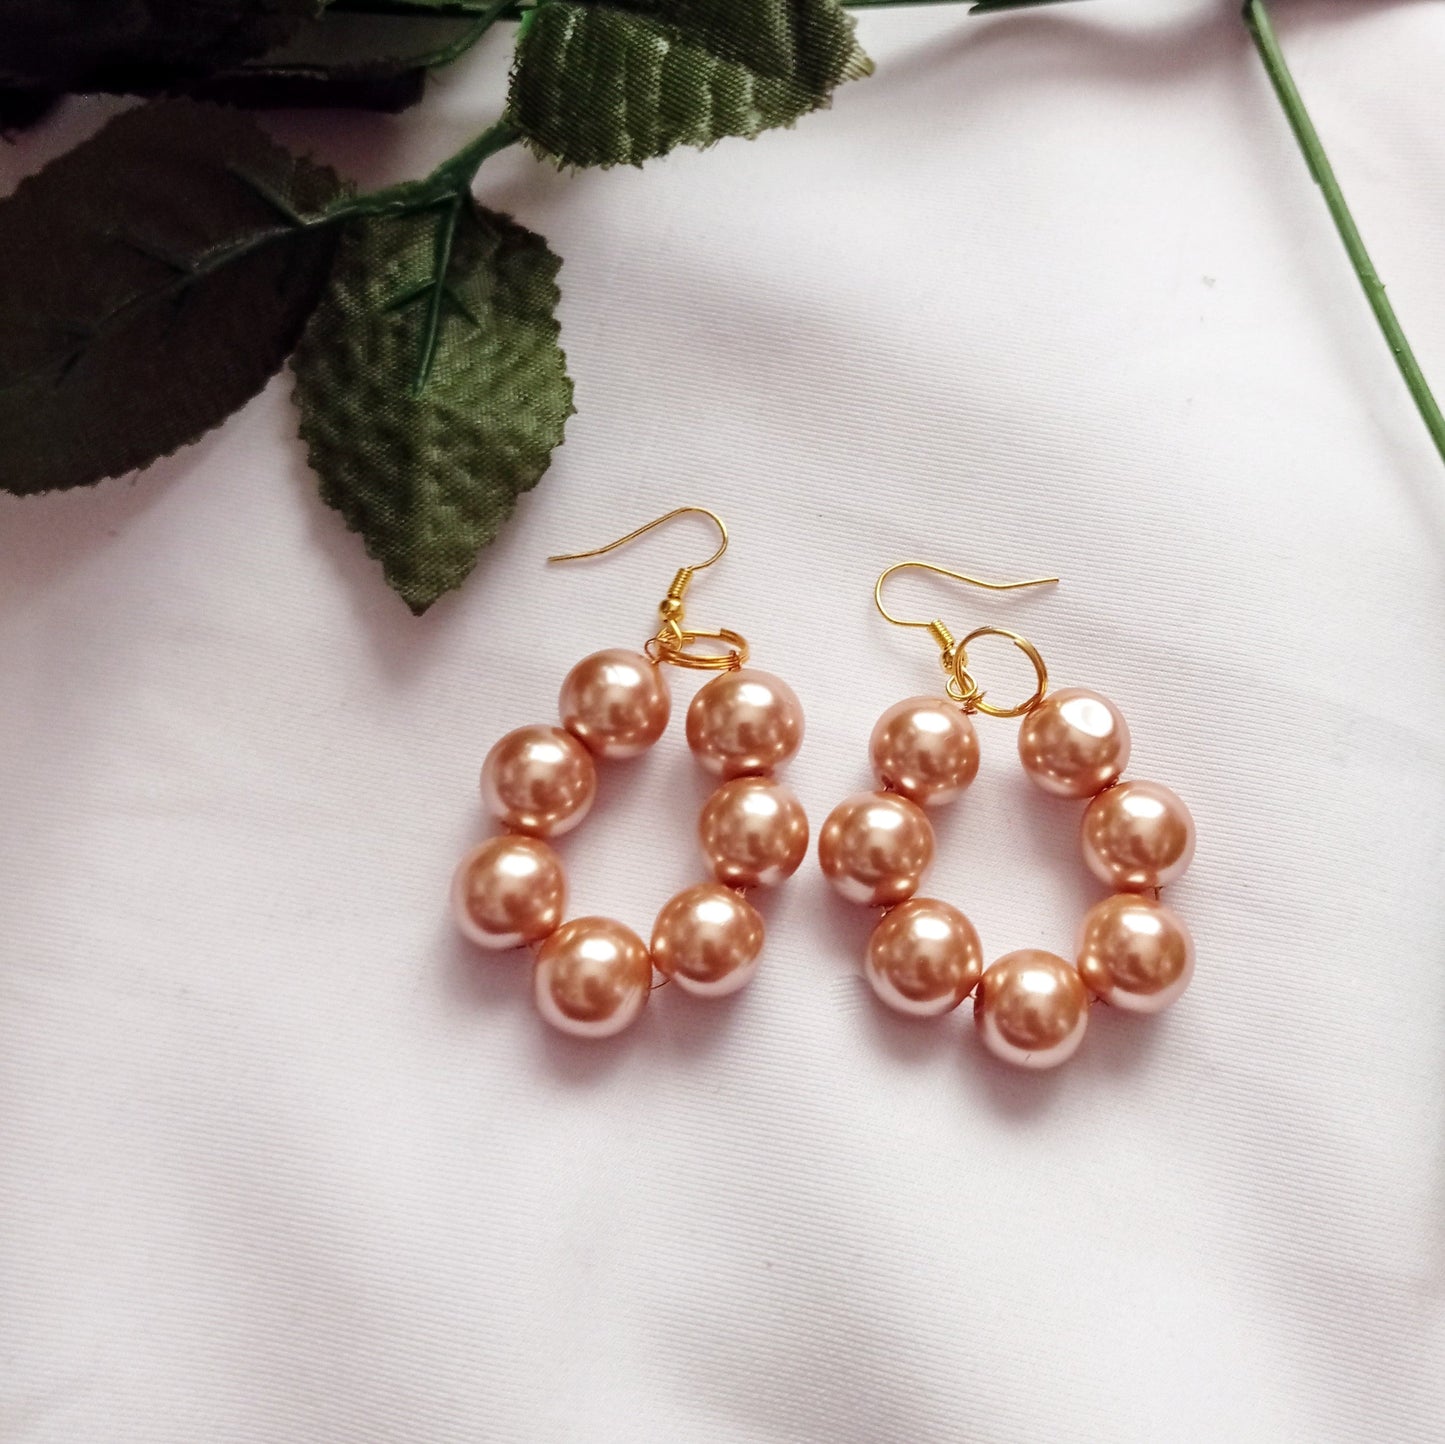 Bronze Glass Pearl Earrings, Glass Pearl Jewelry, Unique Earrings | by lovedbynlanla-6